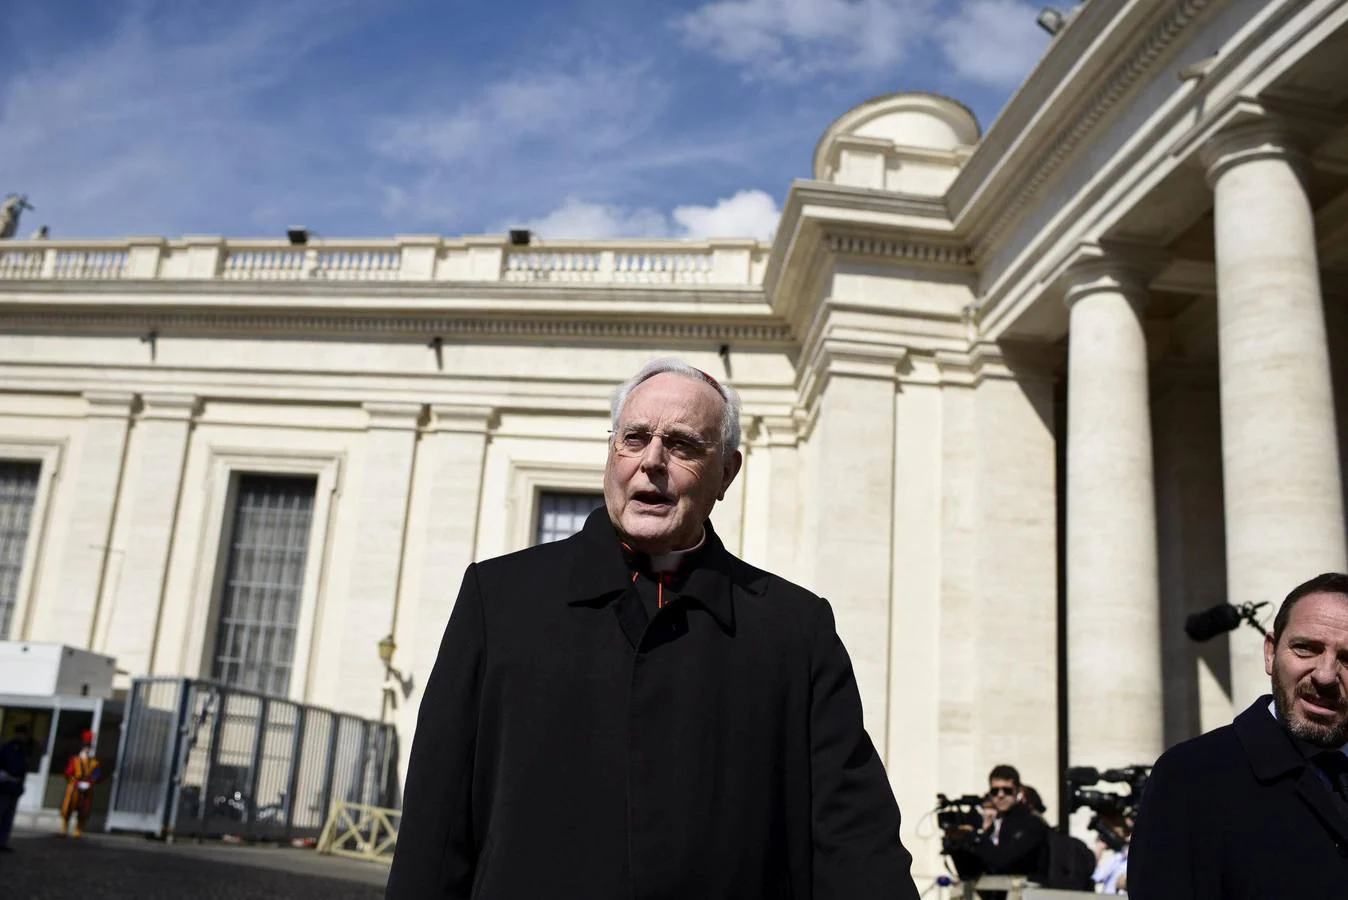 El cardenal en el Vaticano durante el cónclave para elegir al sucesor de Benedicto XVI. EFE